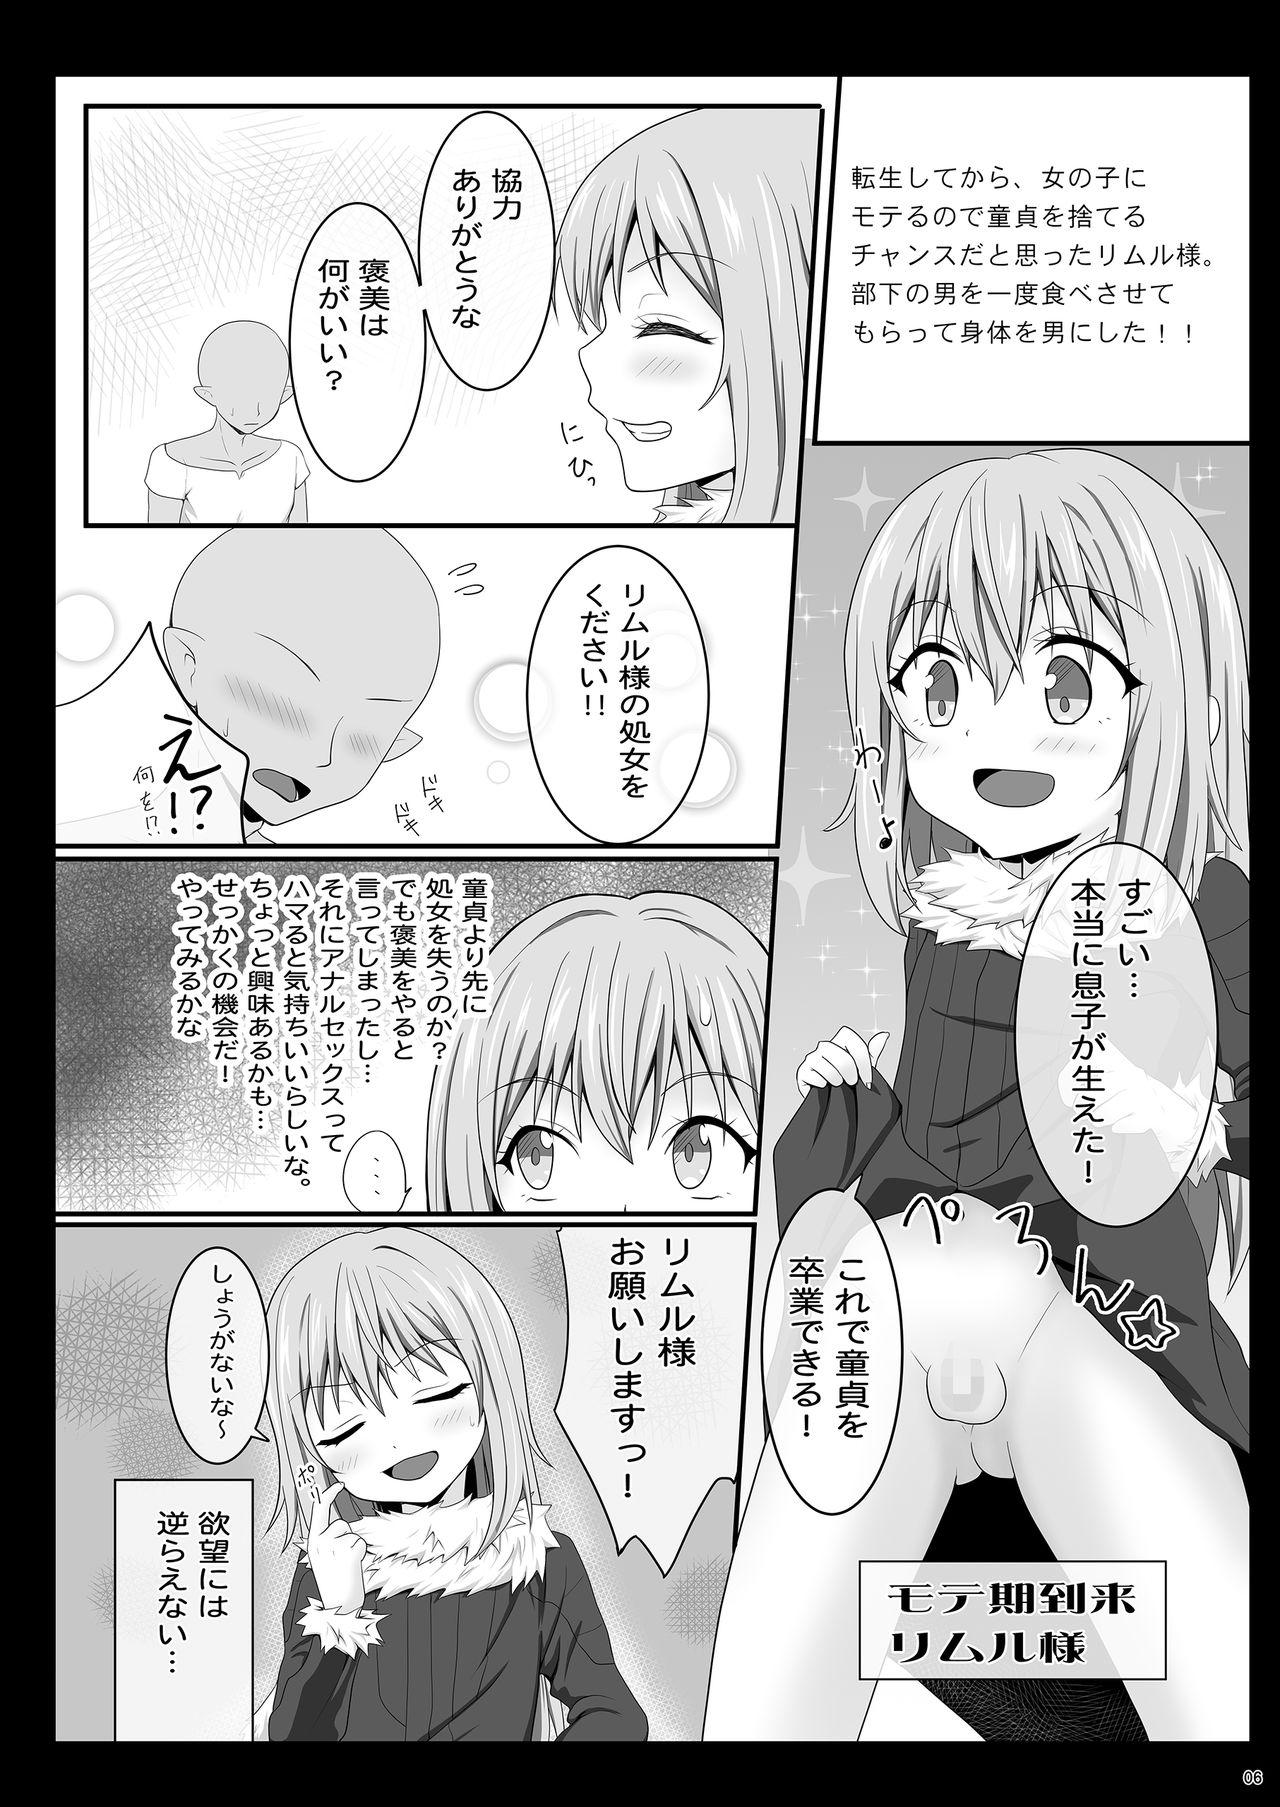 Anal Sex Etchina Rimuru-sama No Matome - Tensei shitara slime datta ken Titties - Page 5